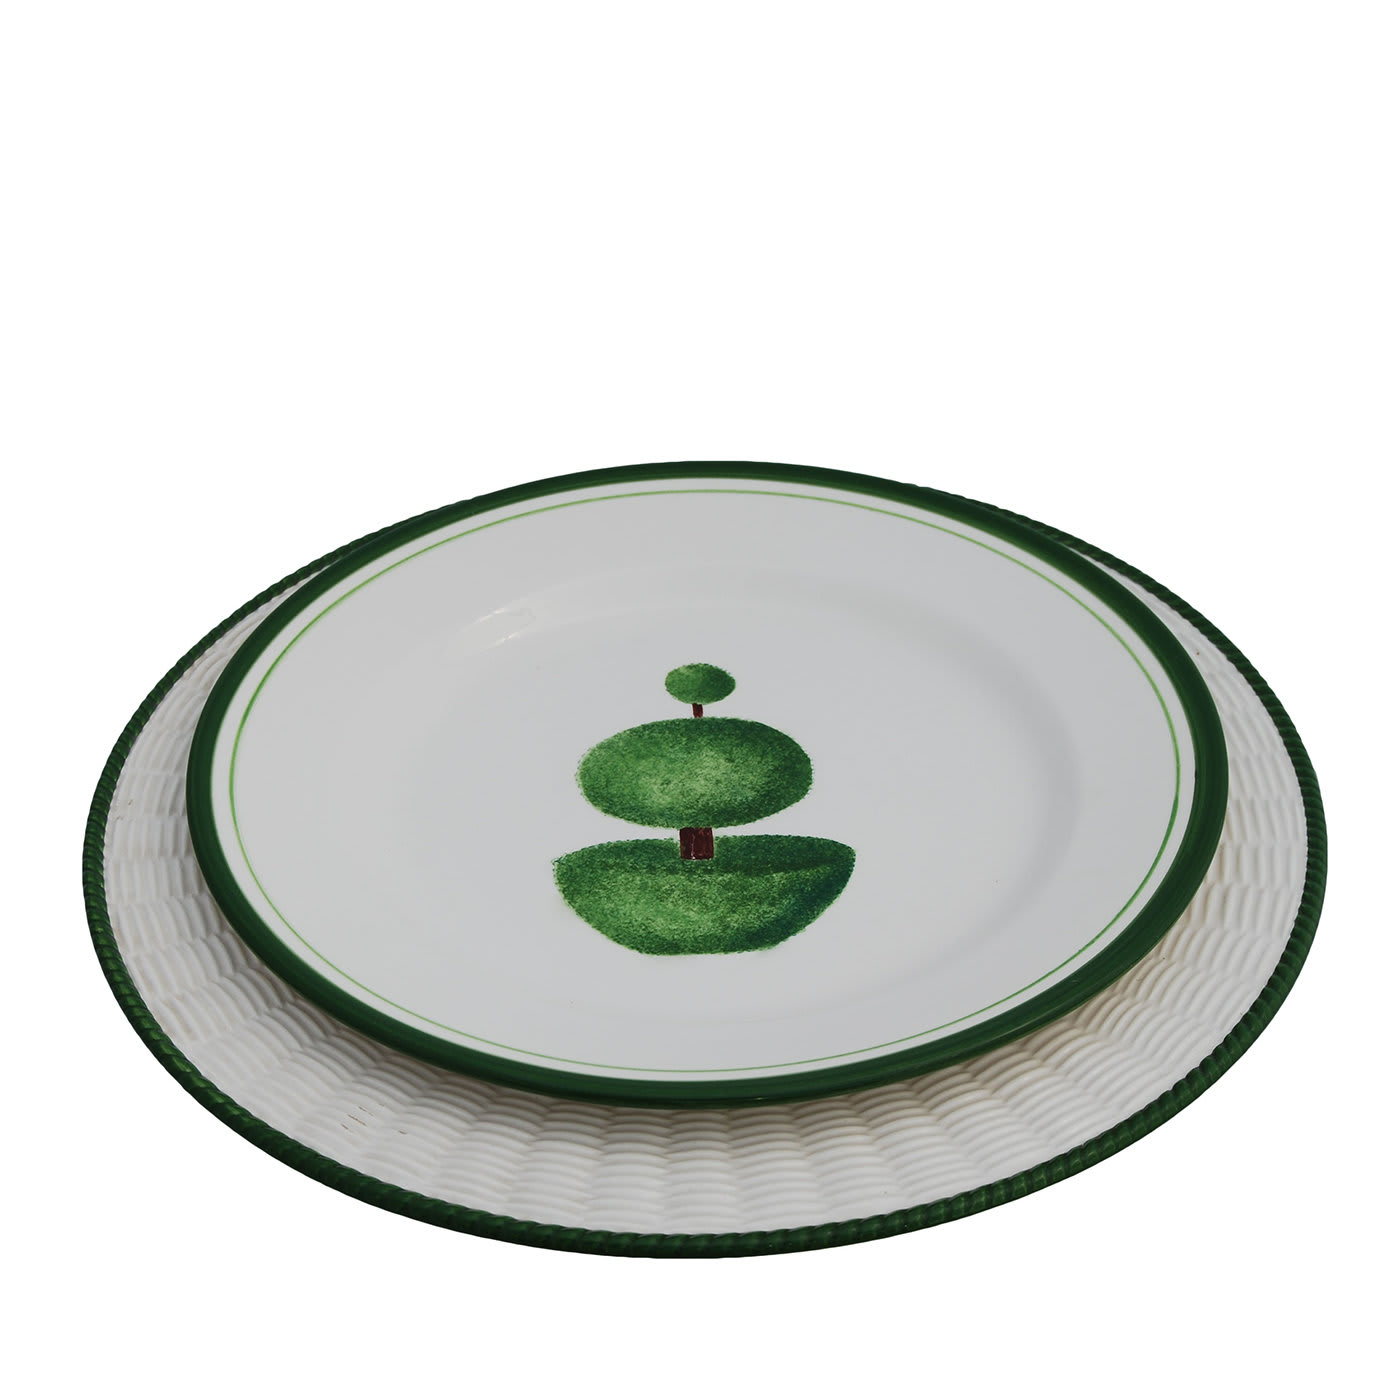 Set of 4 Green Wicker Ceramic Plates - Este Ceramiche